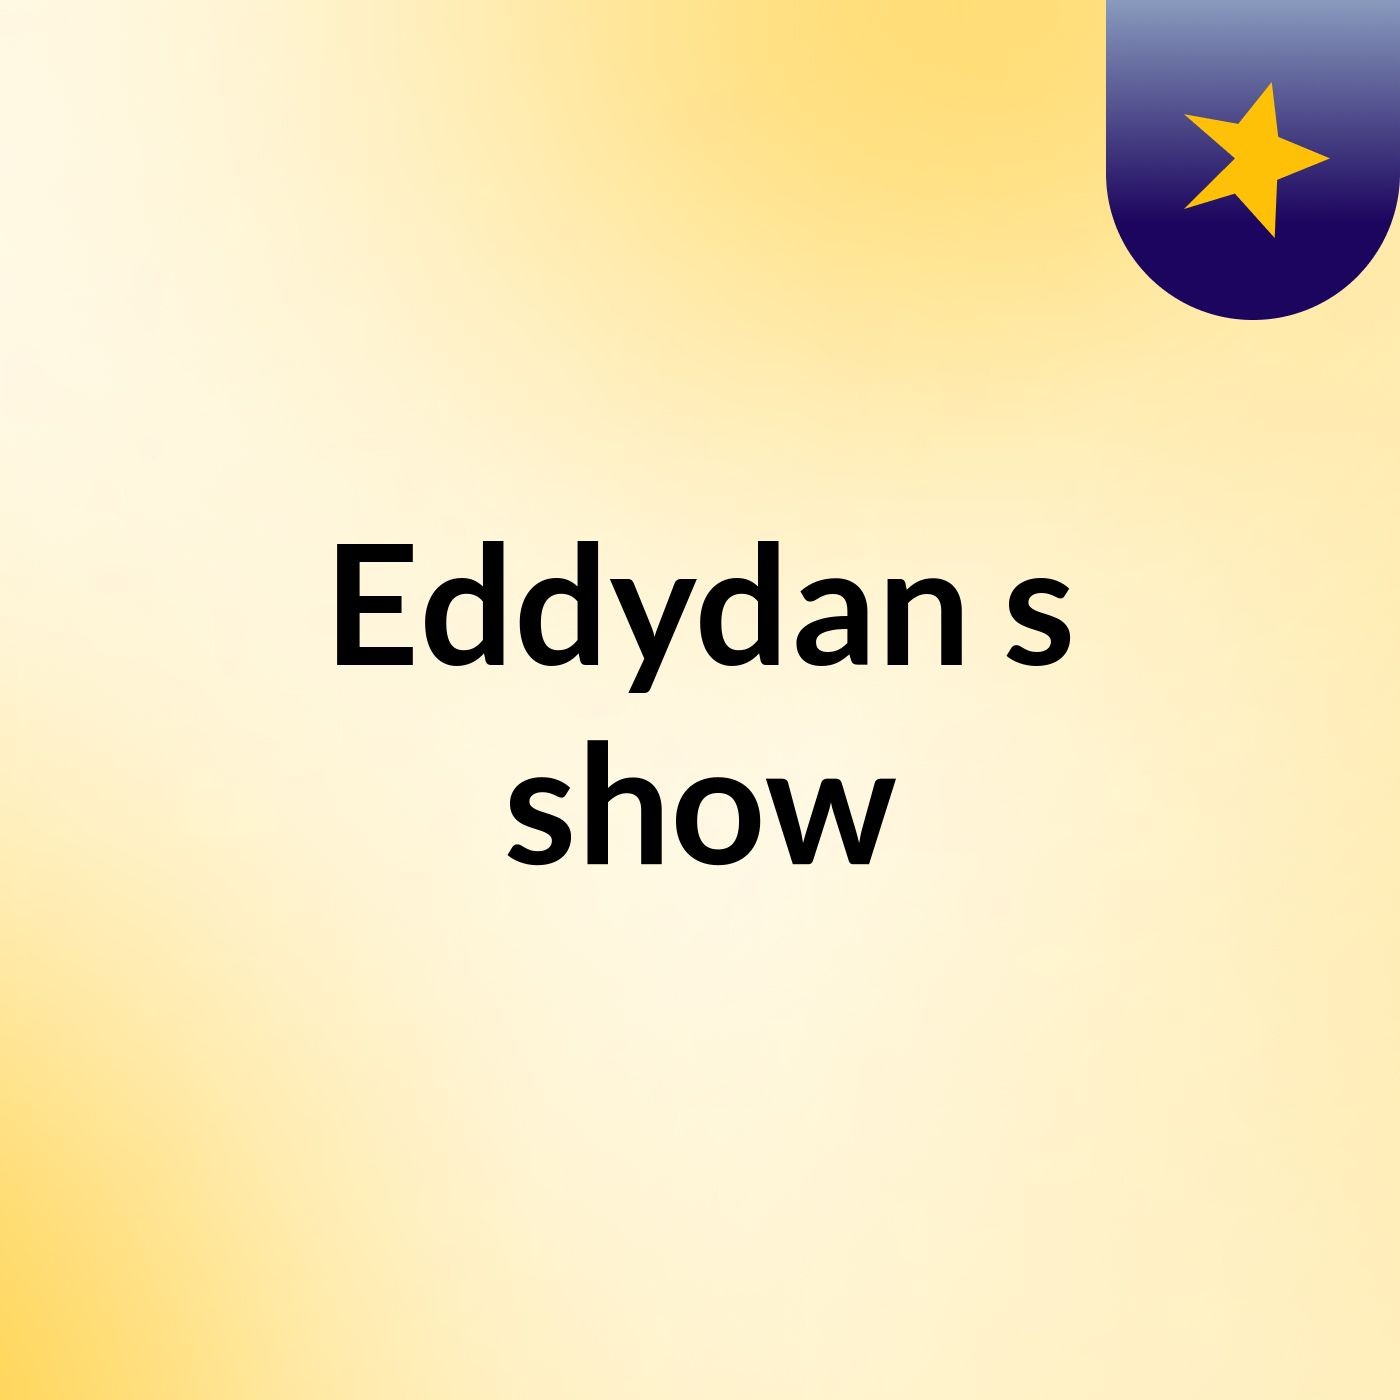 Eddydan's show